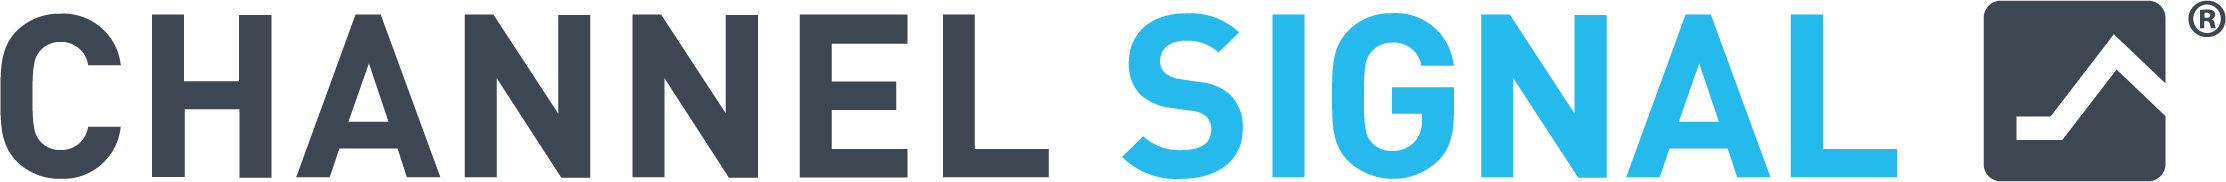 cs-logo-registered.png